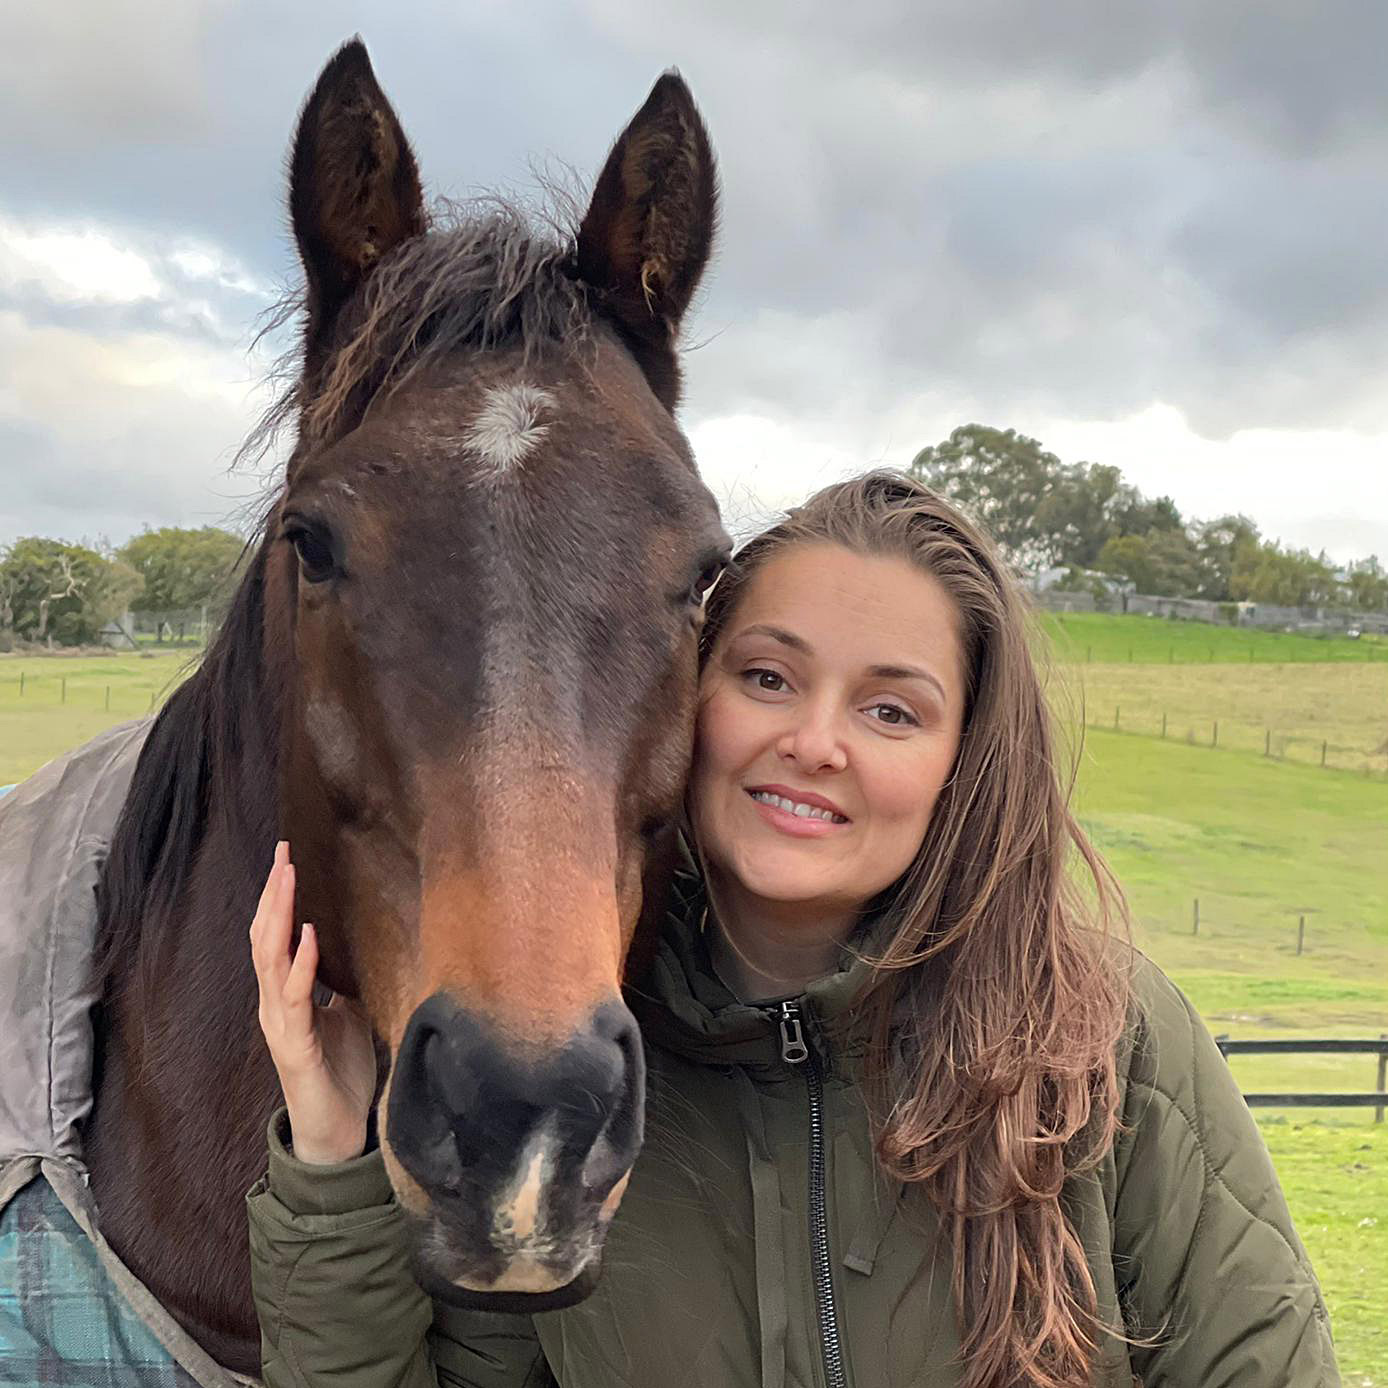 Maja smiling next to horse